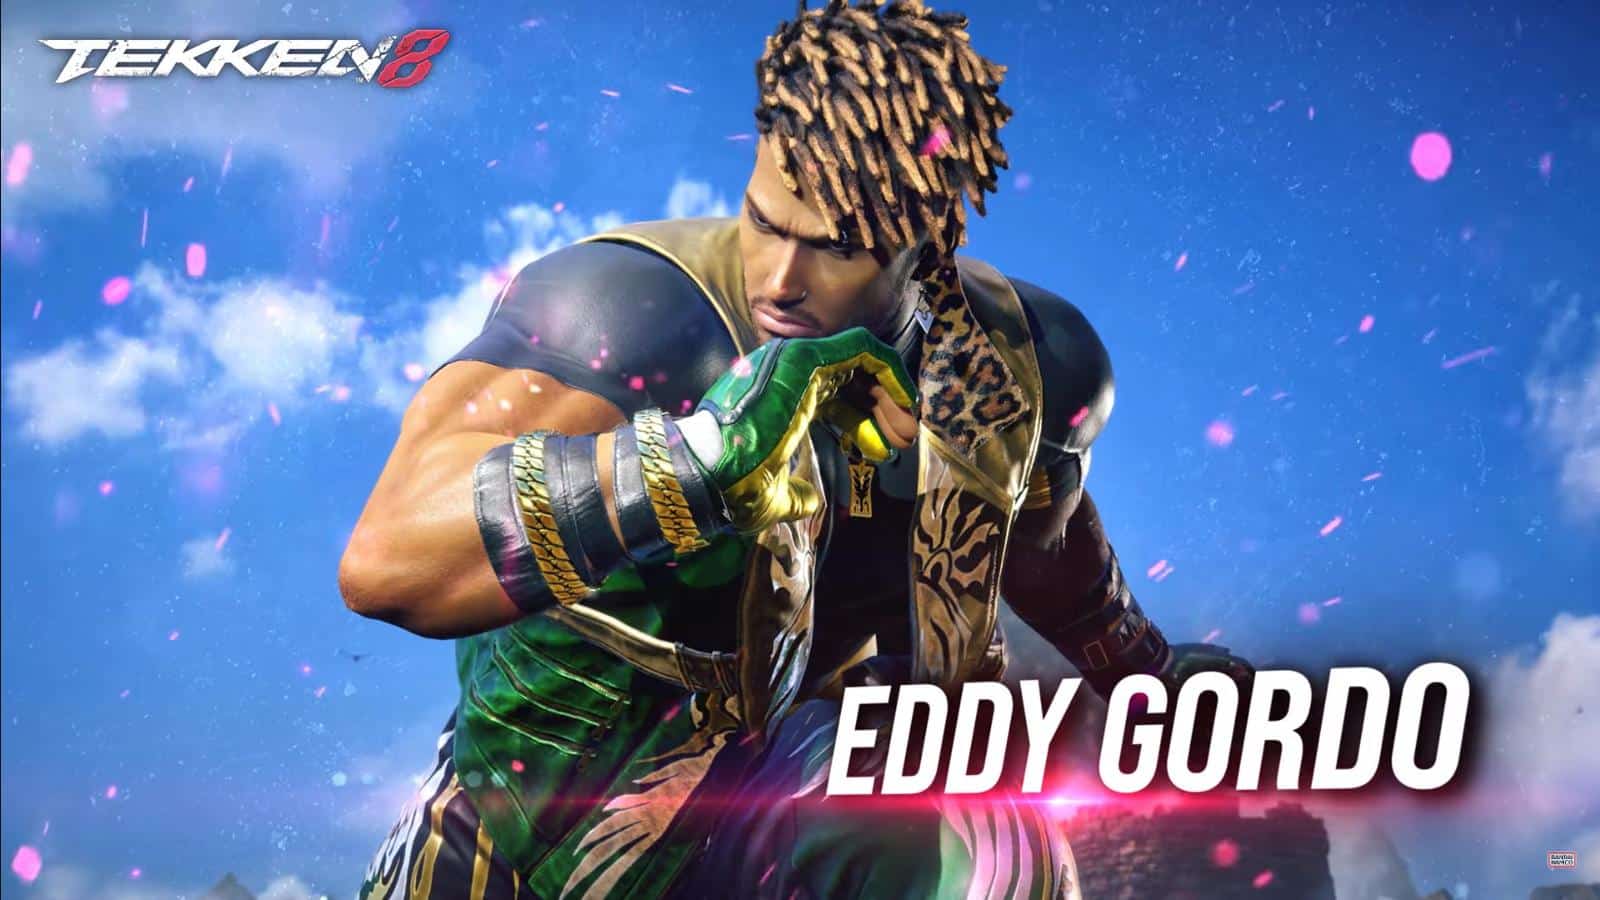 Play3 Video: Tekken 8: Eddy Gordo tänzelt durch den Kampf – Vorstellungsvideo & Termin